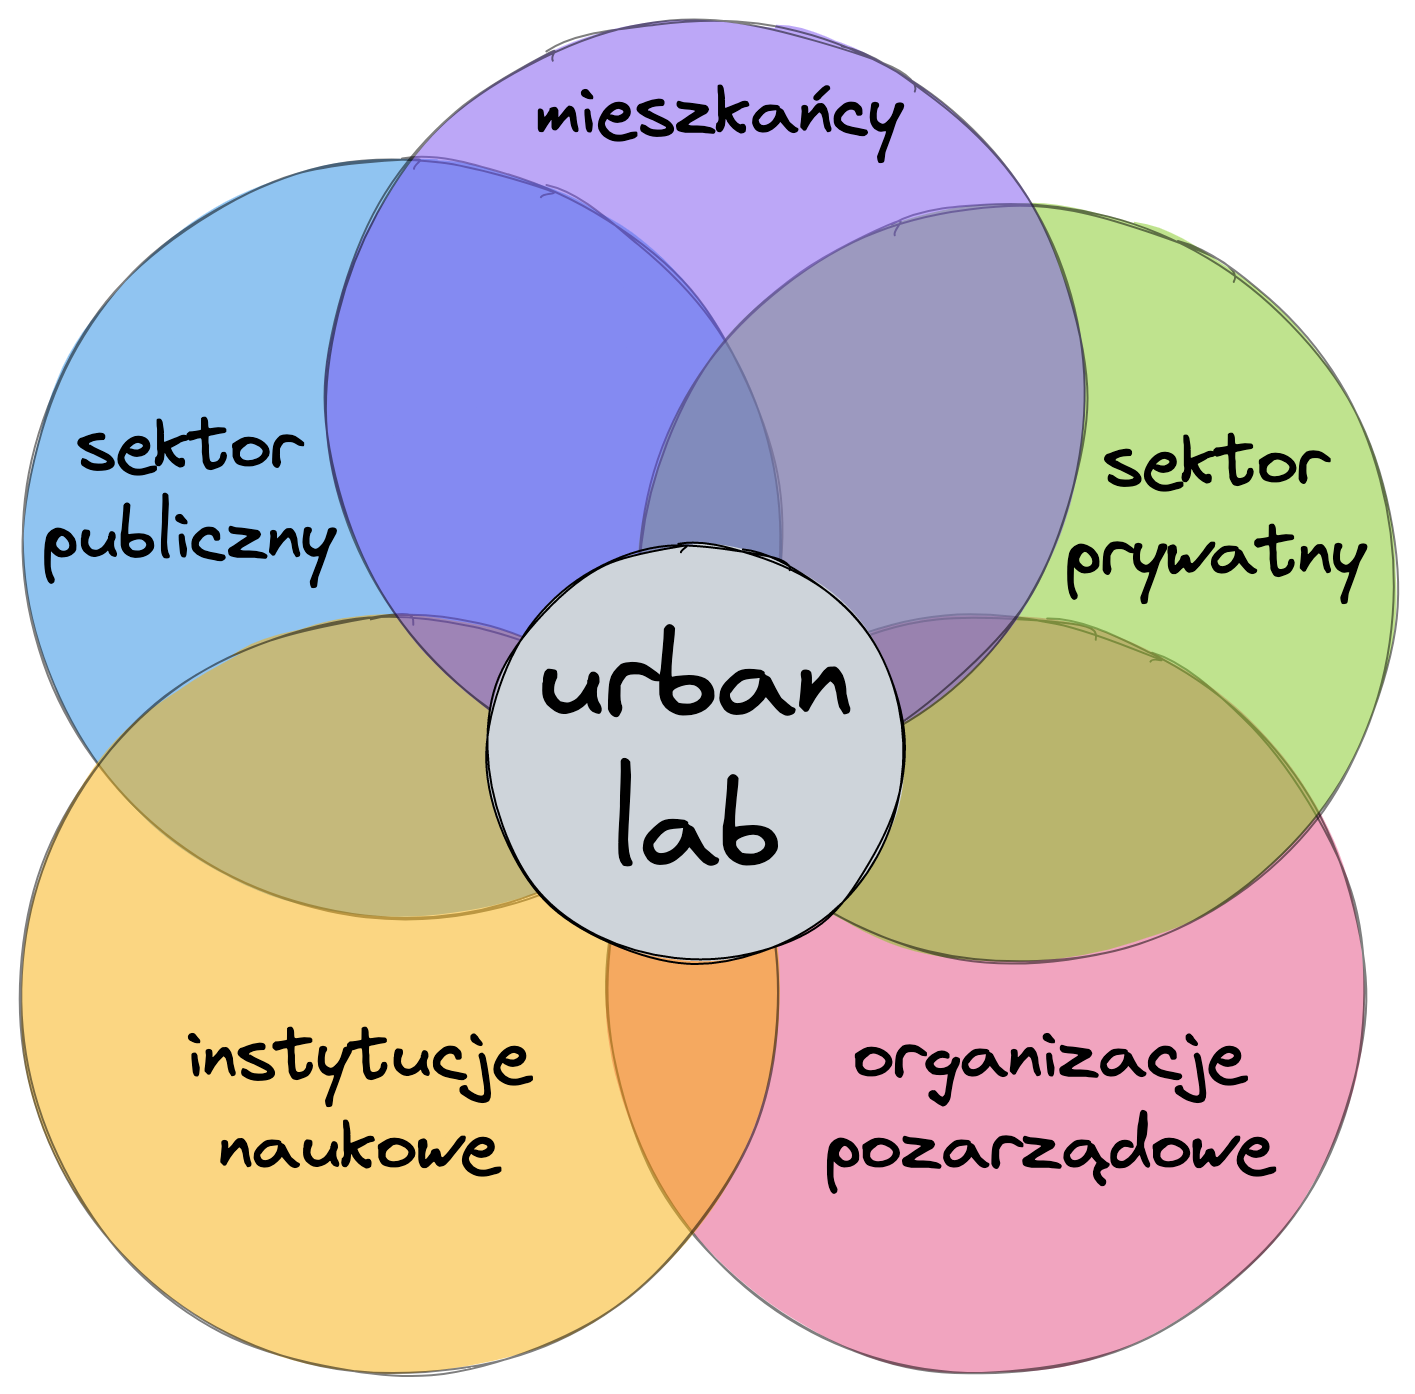 Urban lab - sposób na poprawę jakości życia w mieście